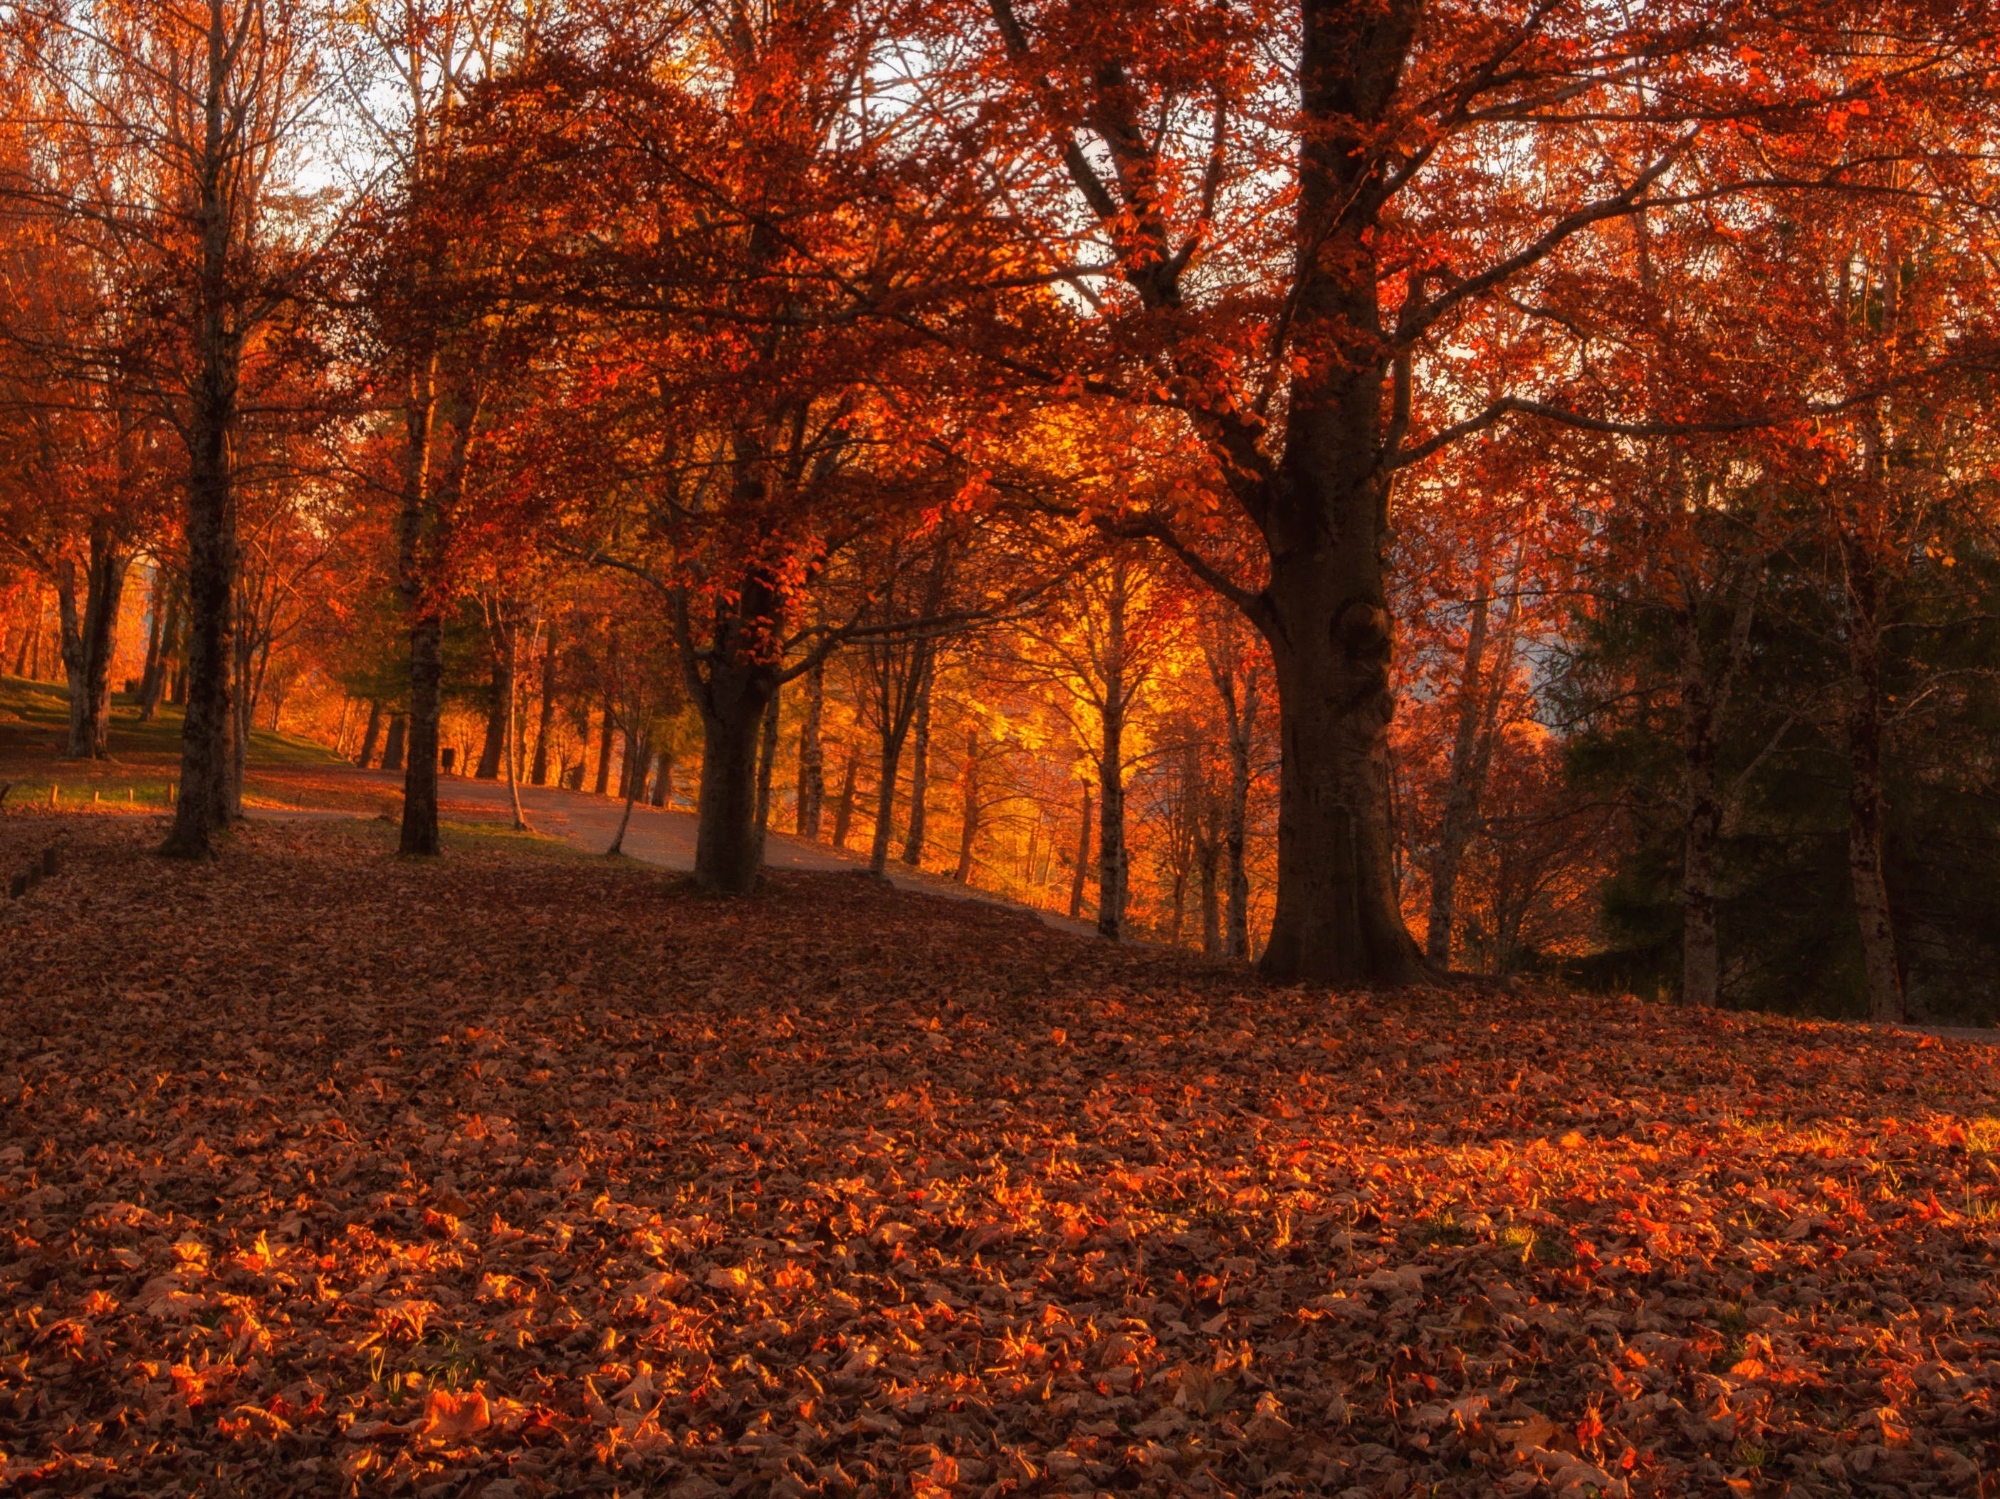 The Orecchiella Park in autumn